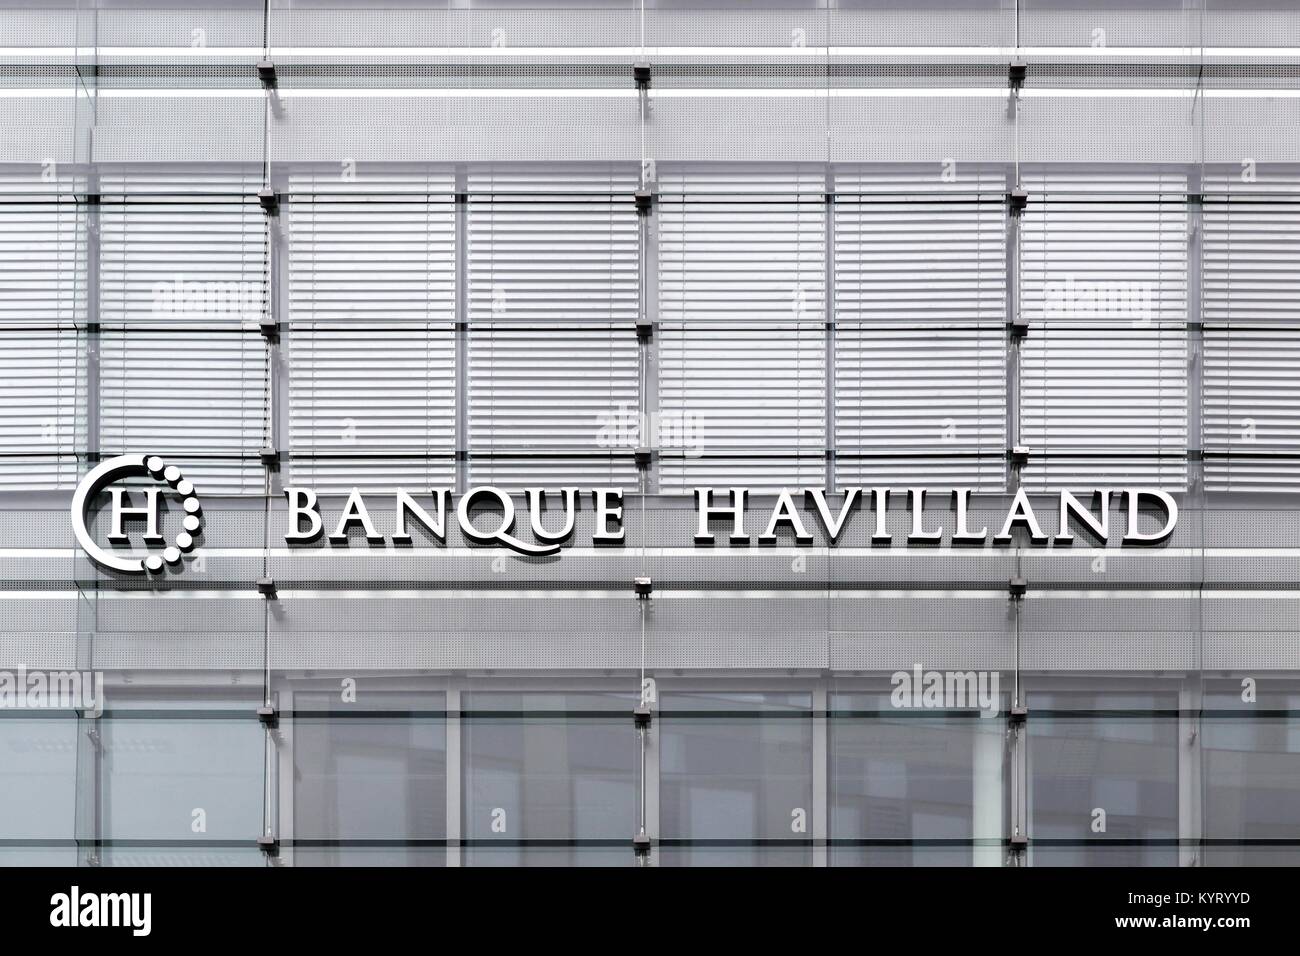 Kirchberg, Luxembourg - 1 juillet 2017 : Banque Havilland bâtiment. Banque Havilland est une banque privée familiale créée en 2009 Banque D'Images